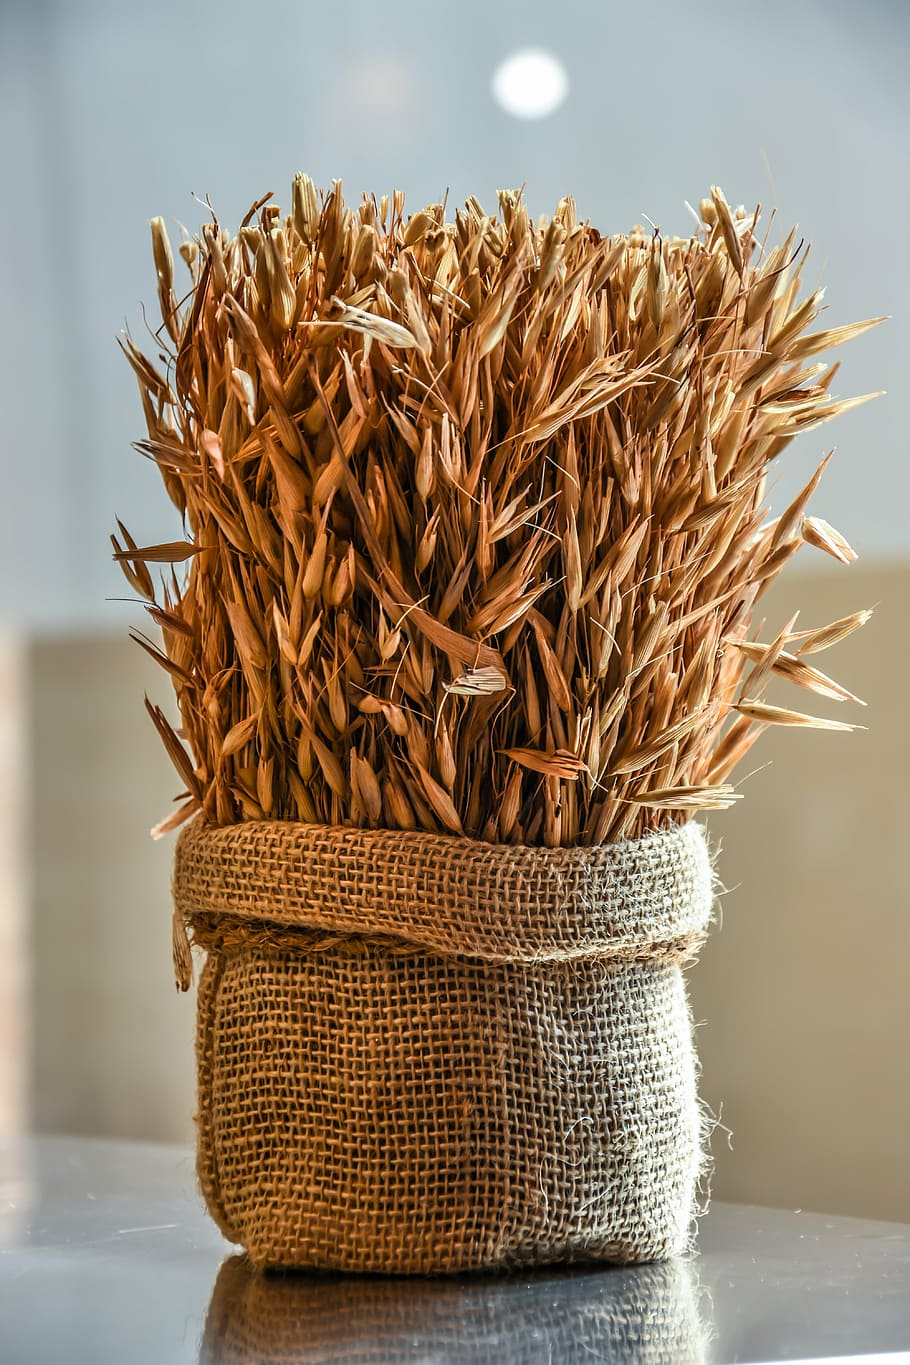 bolsa de arroz, trigo, grano, agricultura, cosecha, alimentos, semillas, pan, cereales, plantas